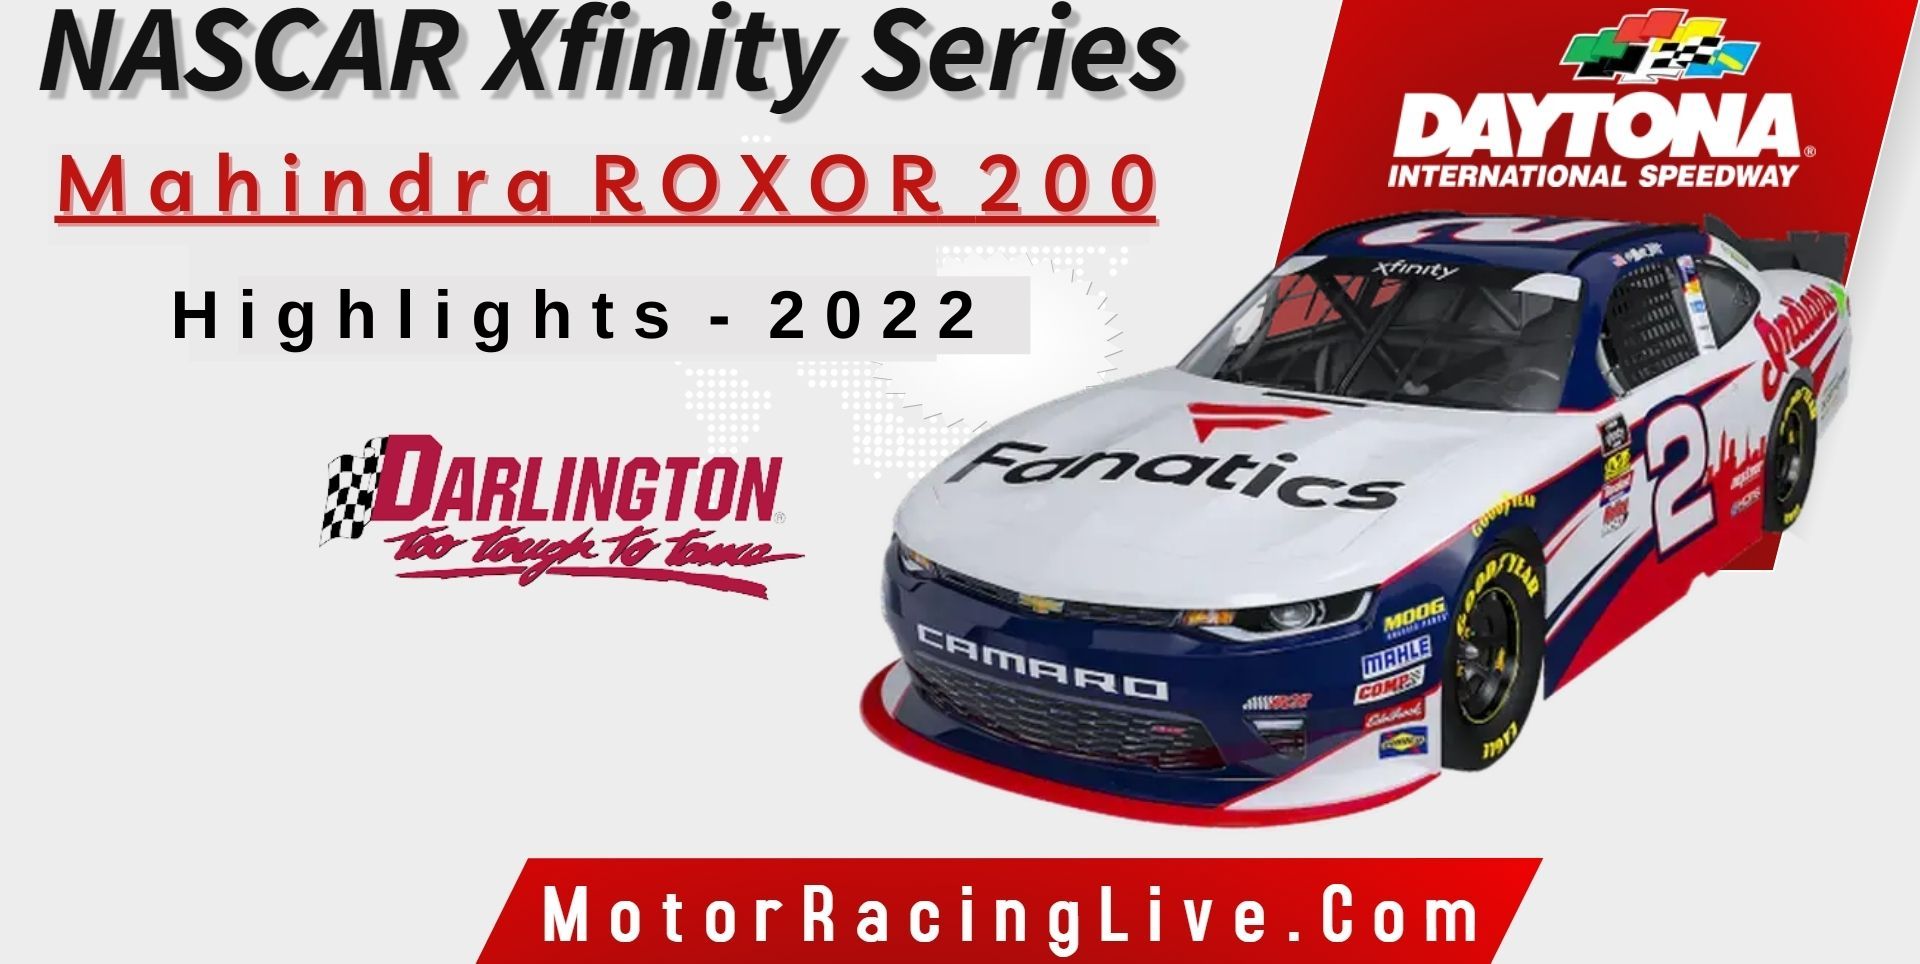 Mahindra ROXOR 200 Highlights 2022 NASCAR Xfinity